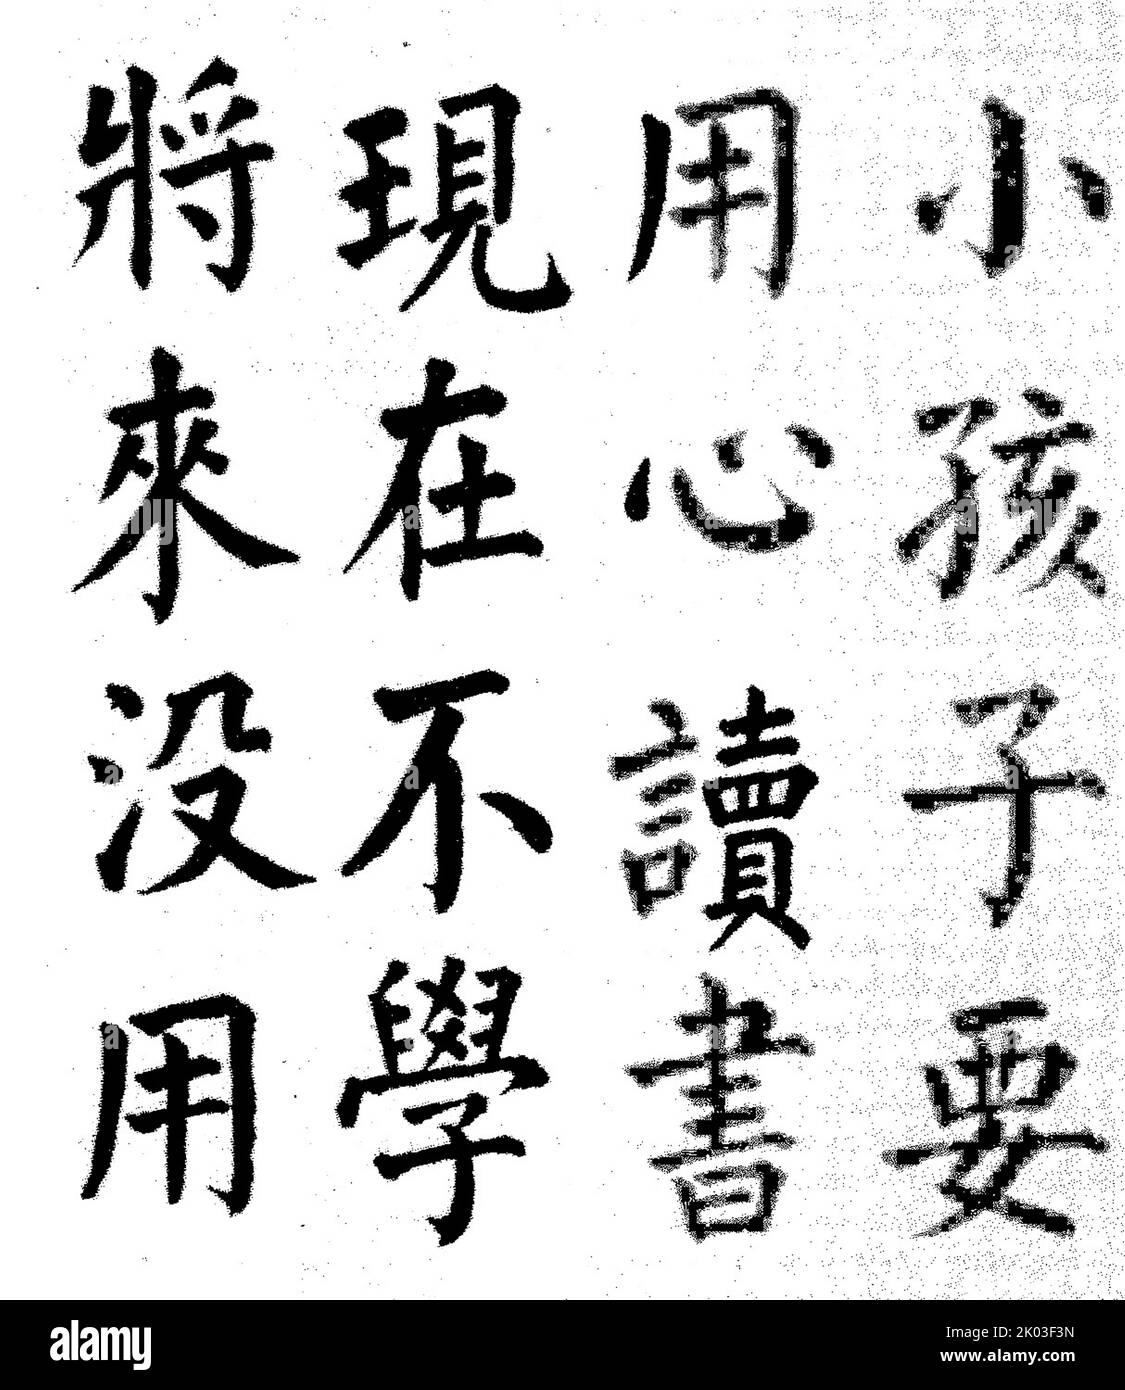 Die rote Mold Inschrift von Ren Bishi für seine Kinder. Ren Bishi war ein militärischer und politischer Führer in der frühen Kommunistischen Partei Chinas. Anfang 1930s Stockfoto